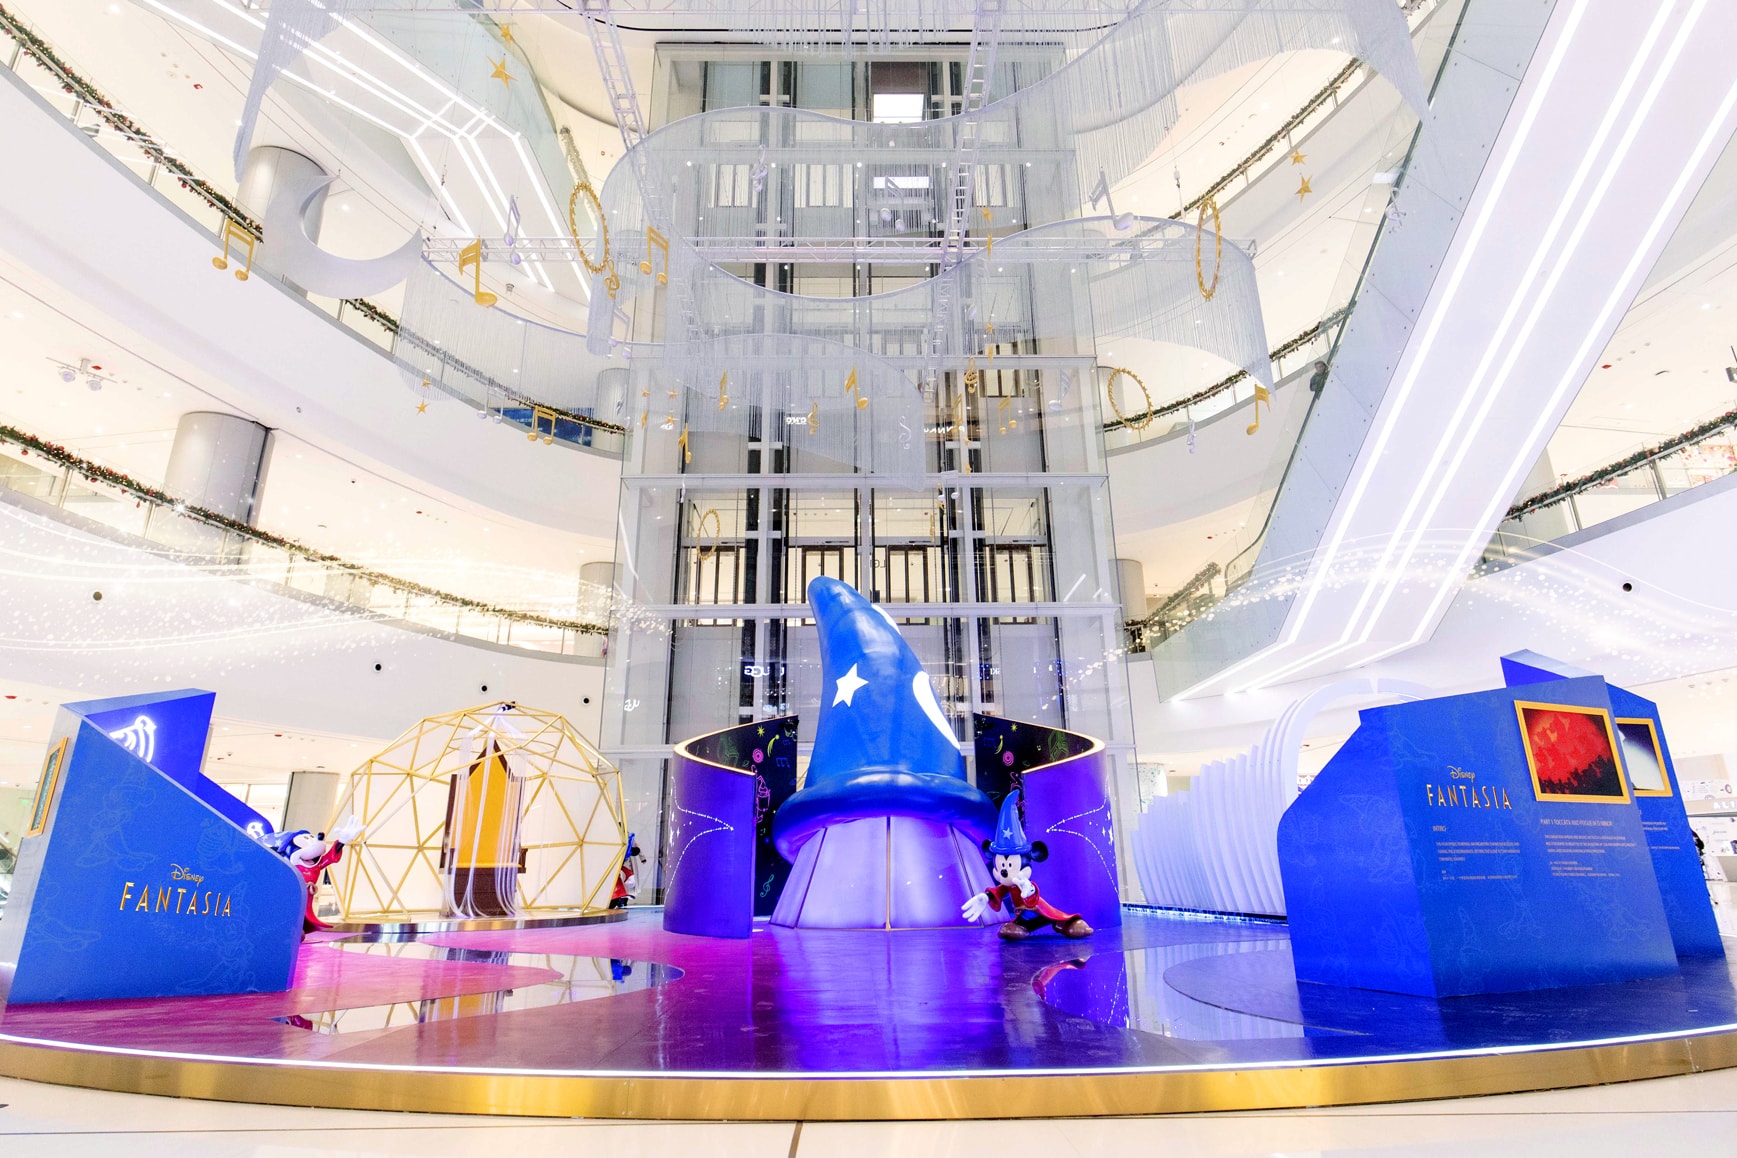 长沙 IFS 与迪士尼共同特别呈现「幻‘乐’奇境」商场展